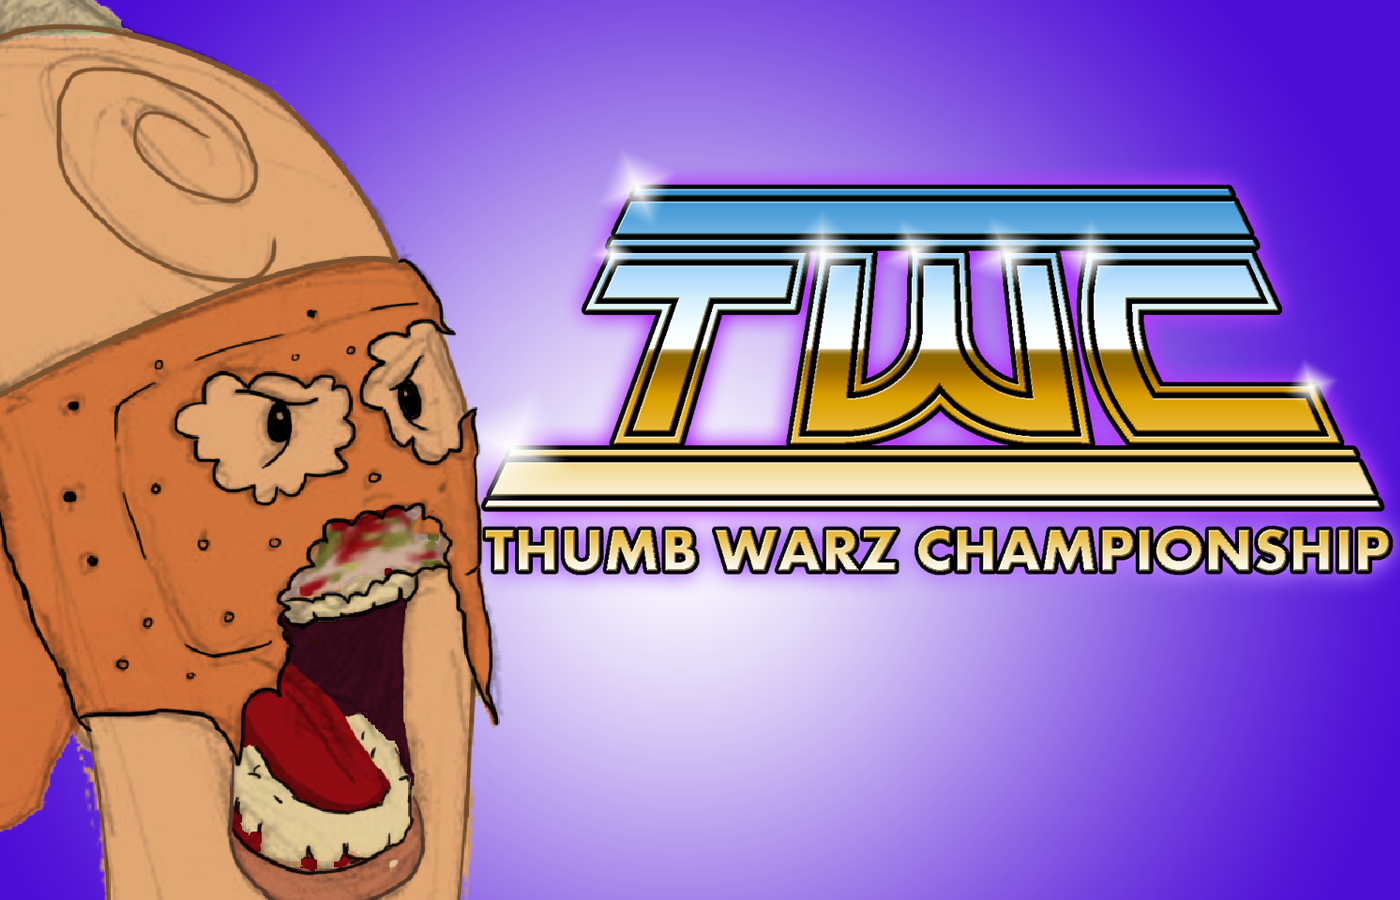 Thumb Warz Championship